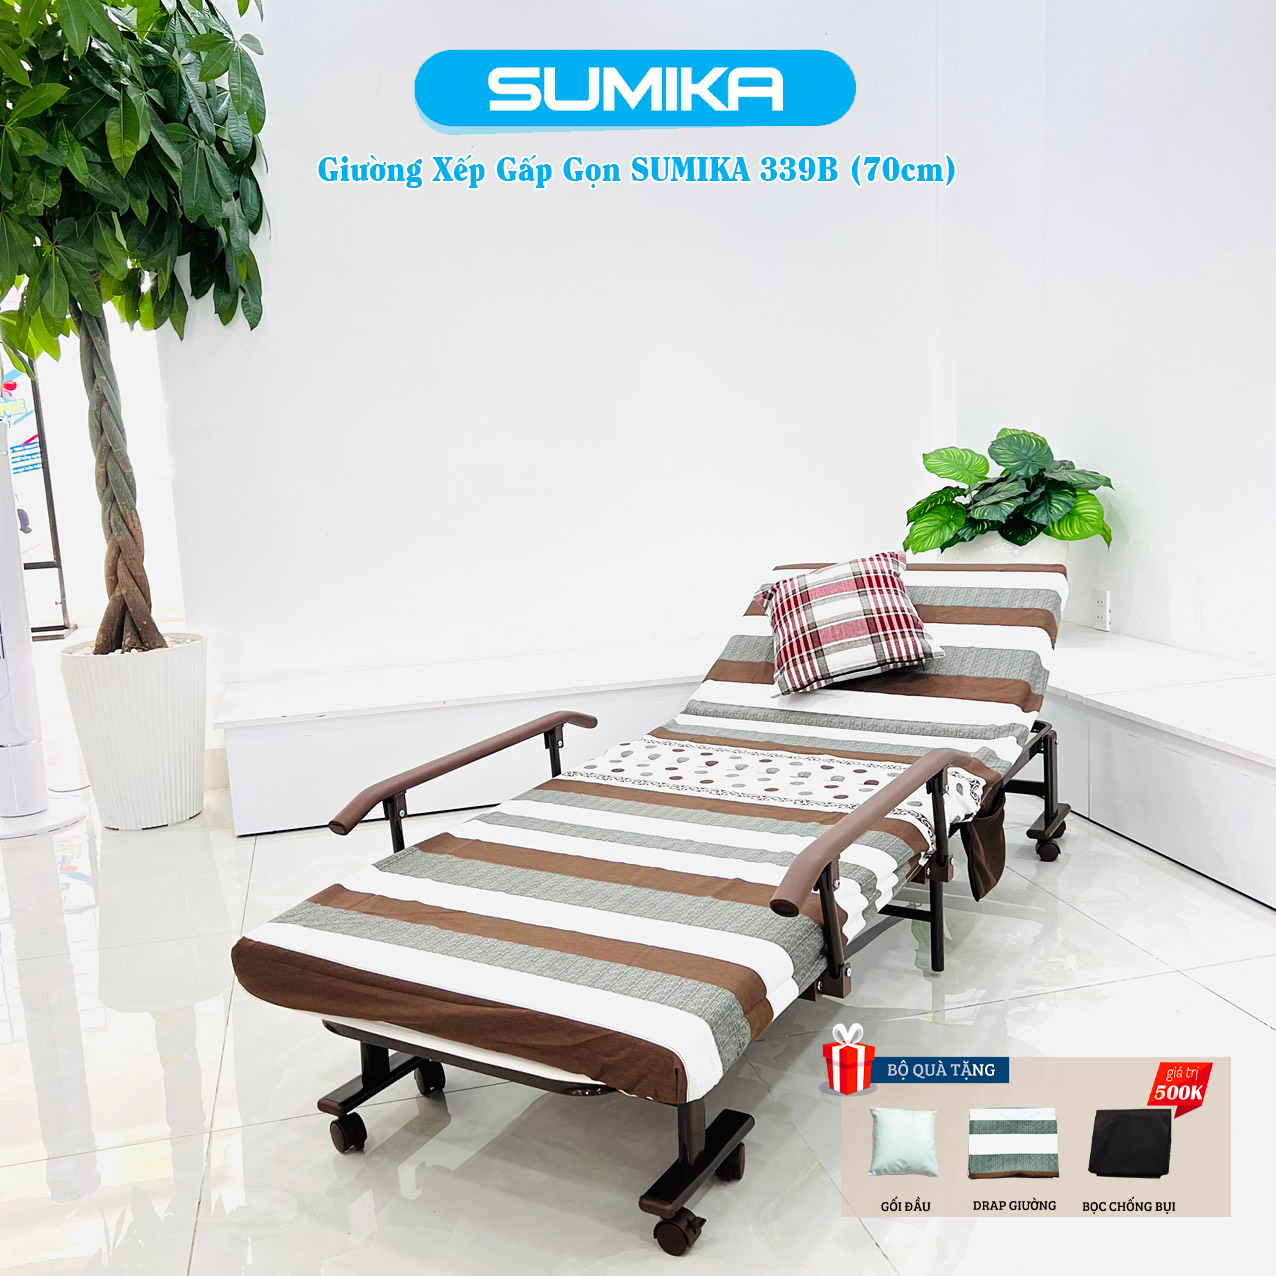 Giường gấp xếp gọn đa năng SUMIKA 339D, rộng 80cm